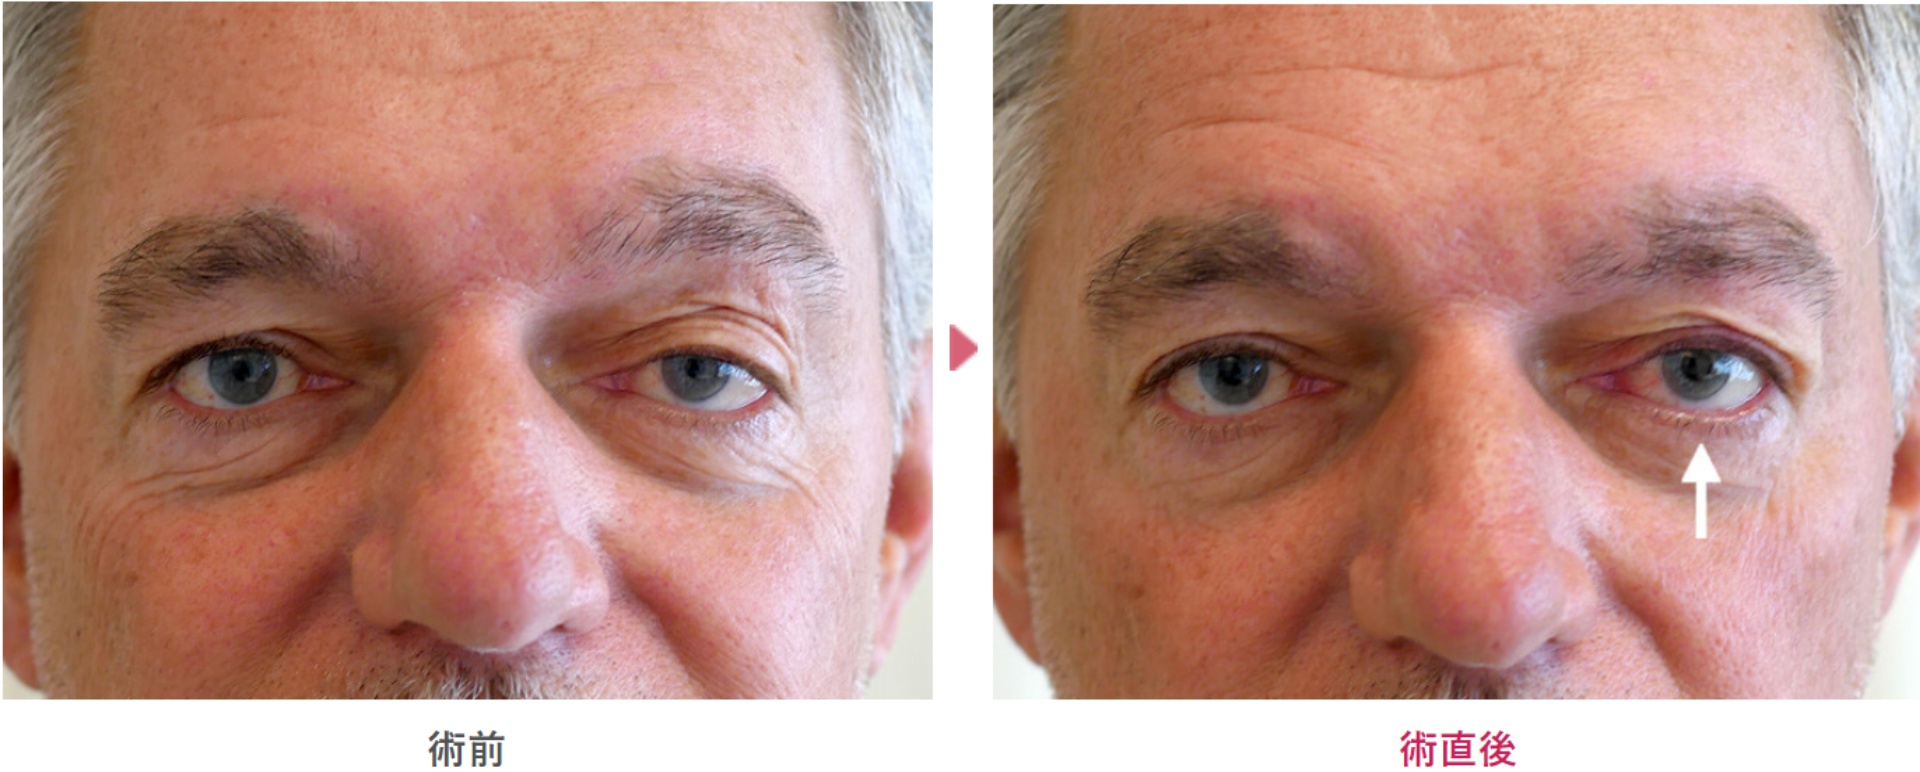 先天性眼瞼下垂症の術前と術後の見た目の変化を表す症例写真